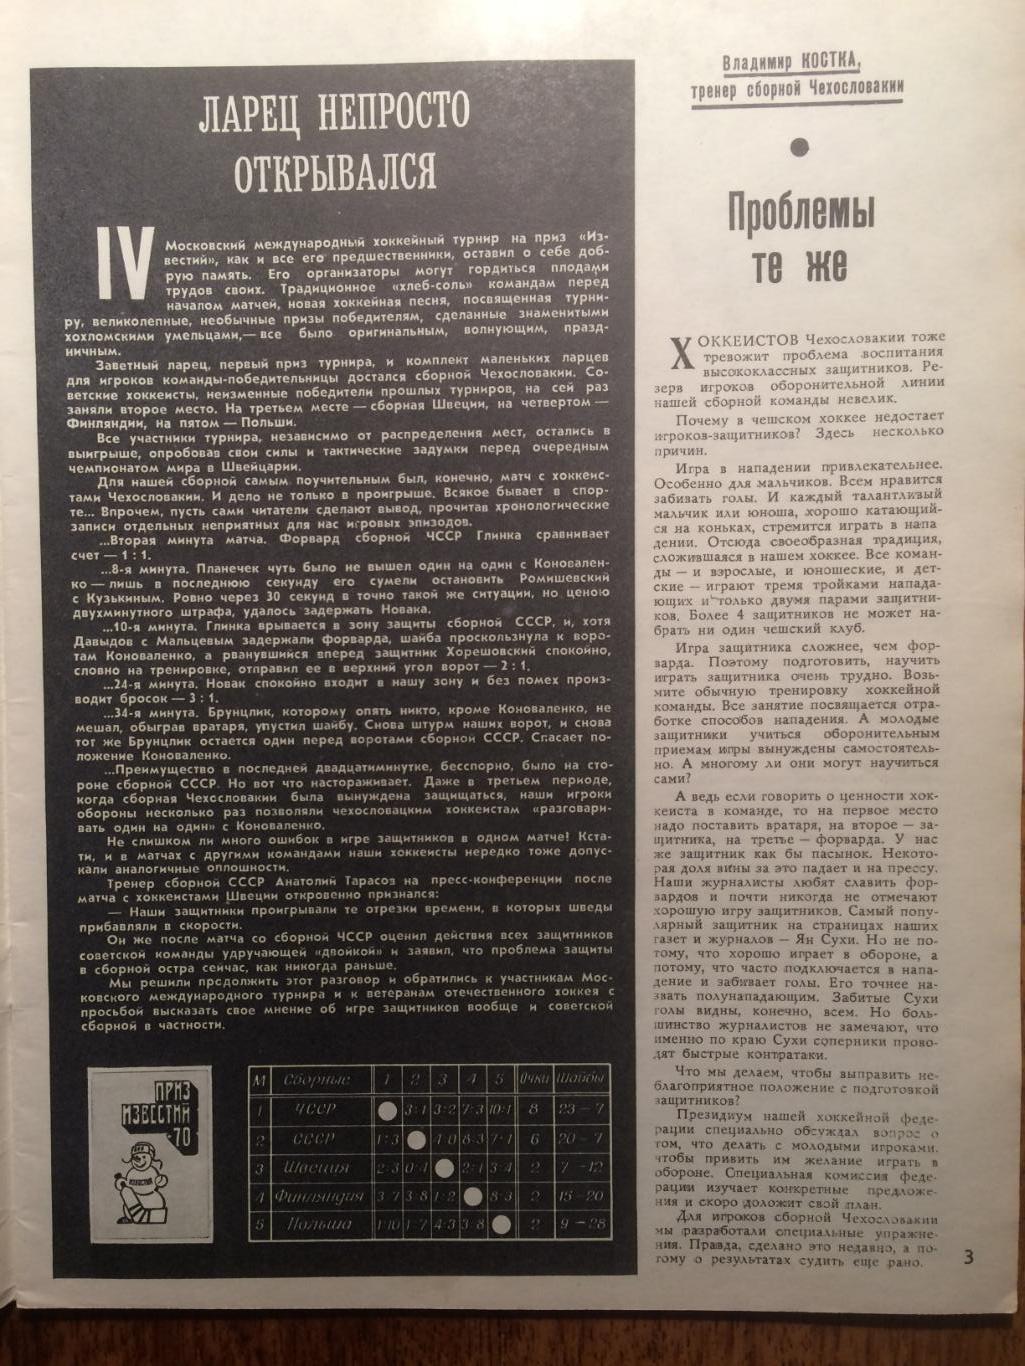 Журнал Спортивные игры №2 1971 Третьяк 1